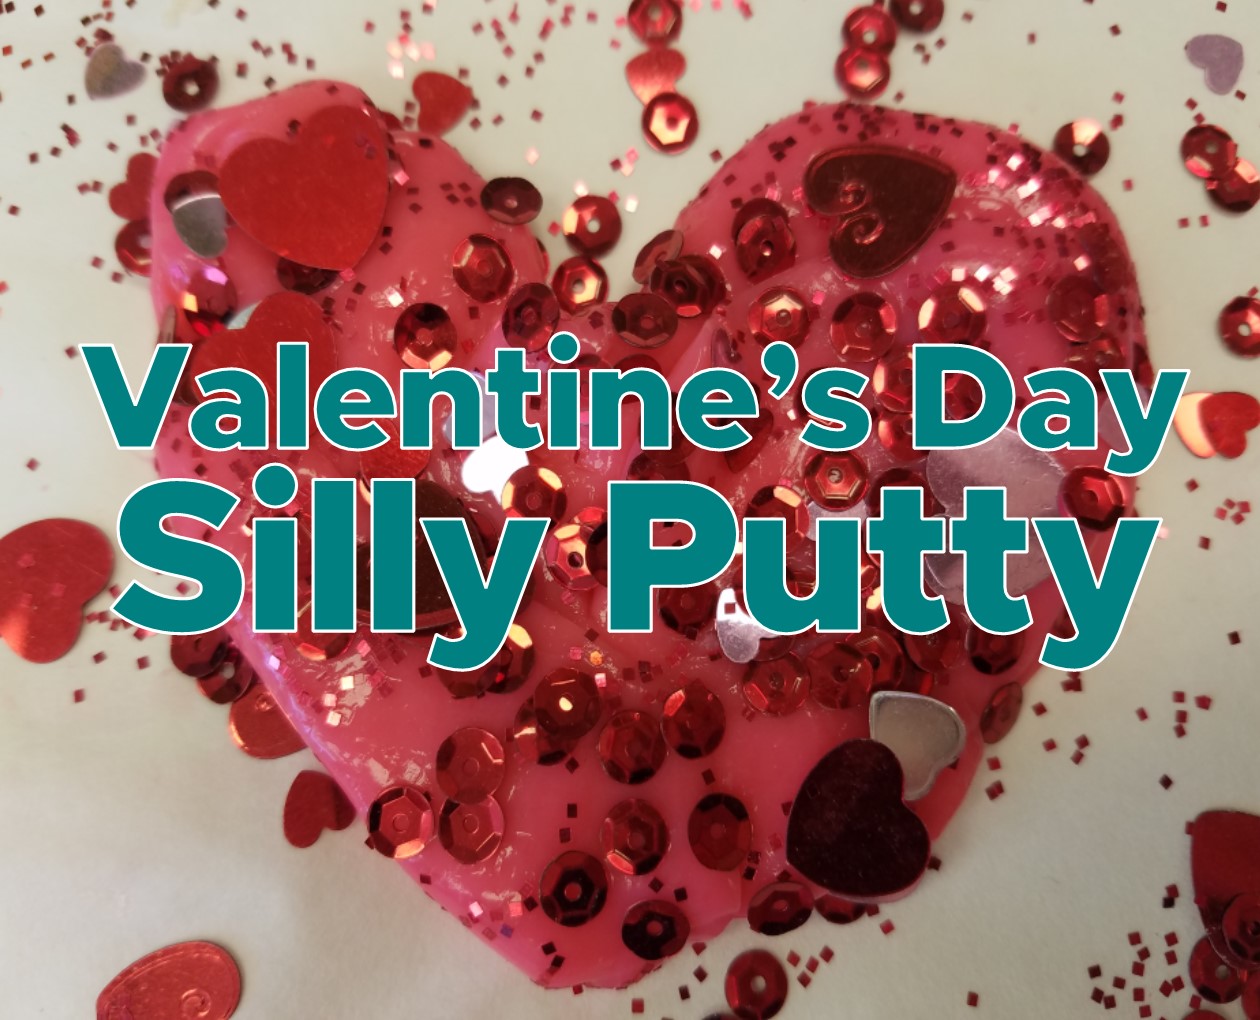 Valentine's Day Silly Putty